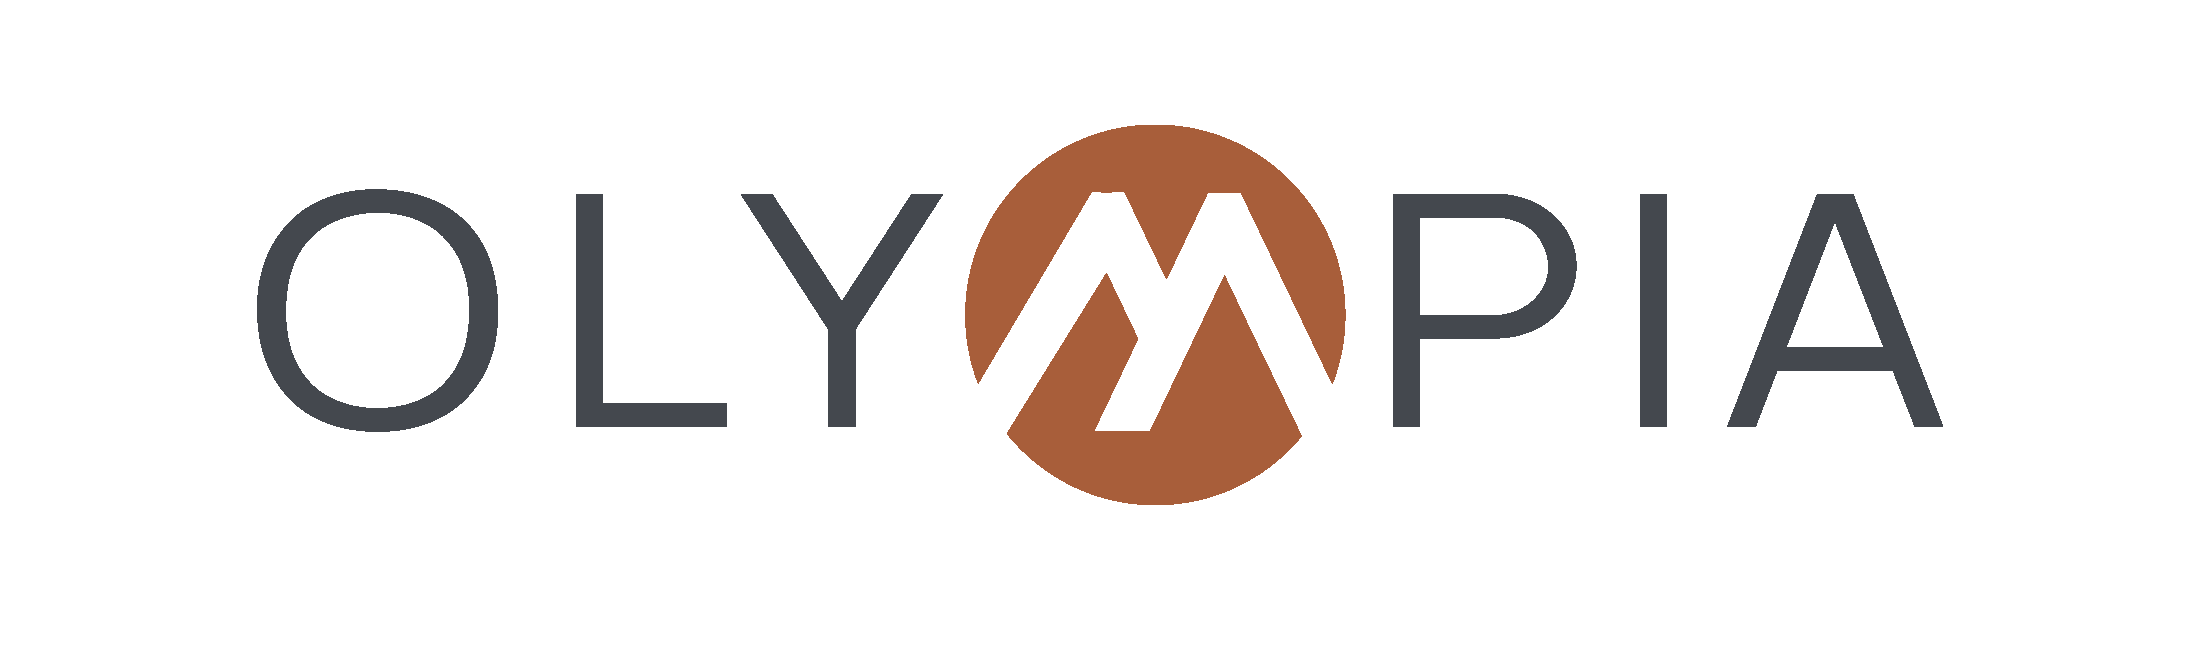 Olympia_Main Logo